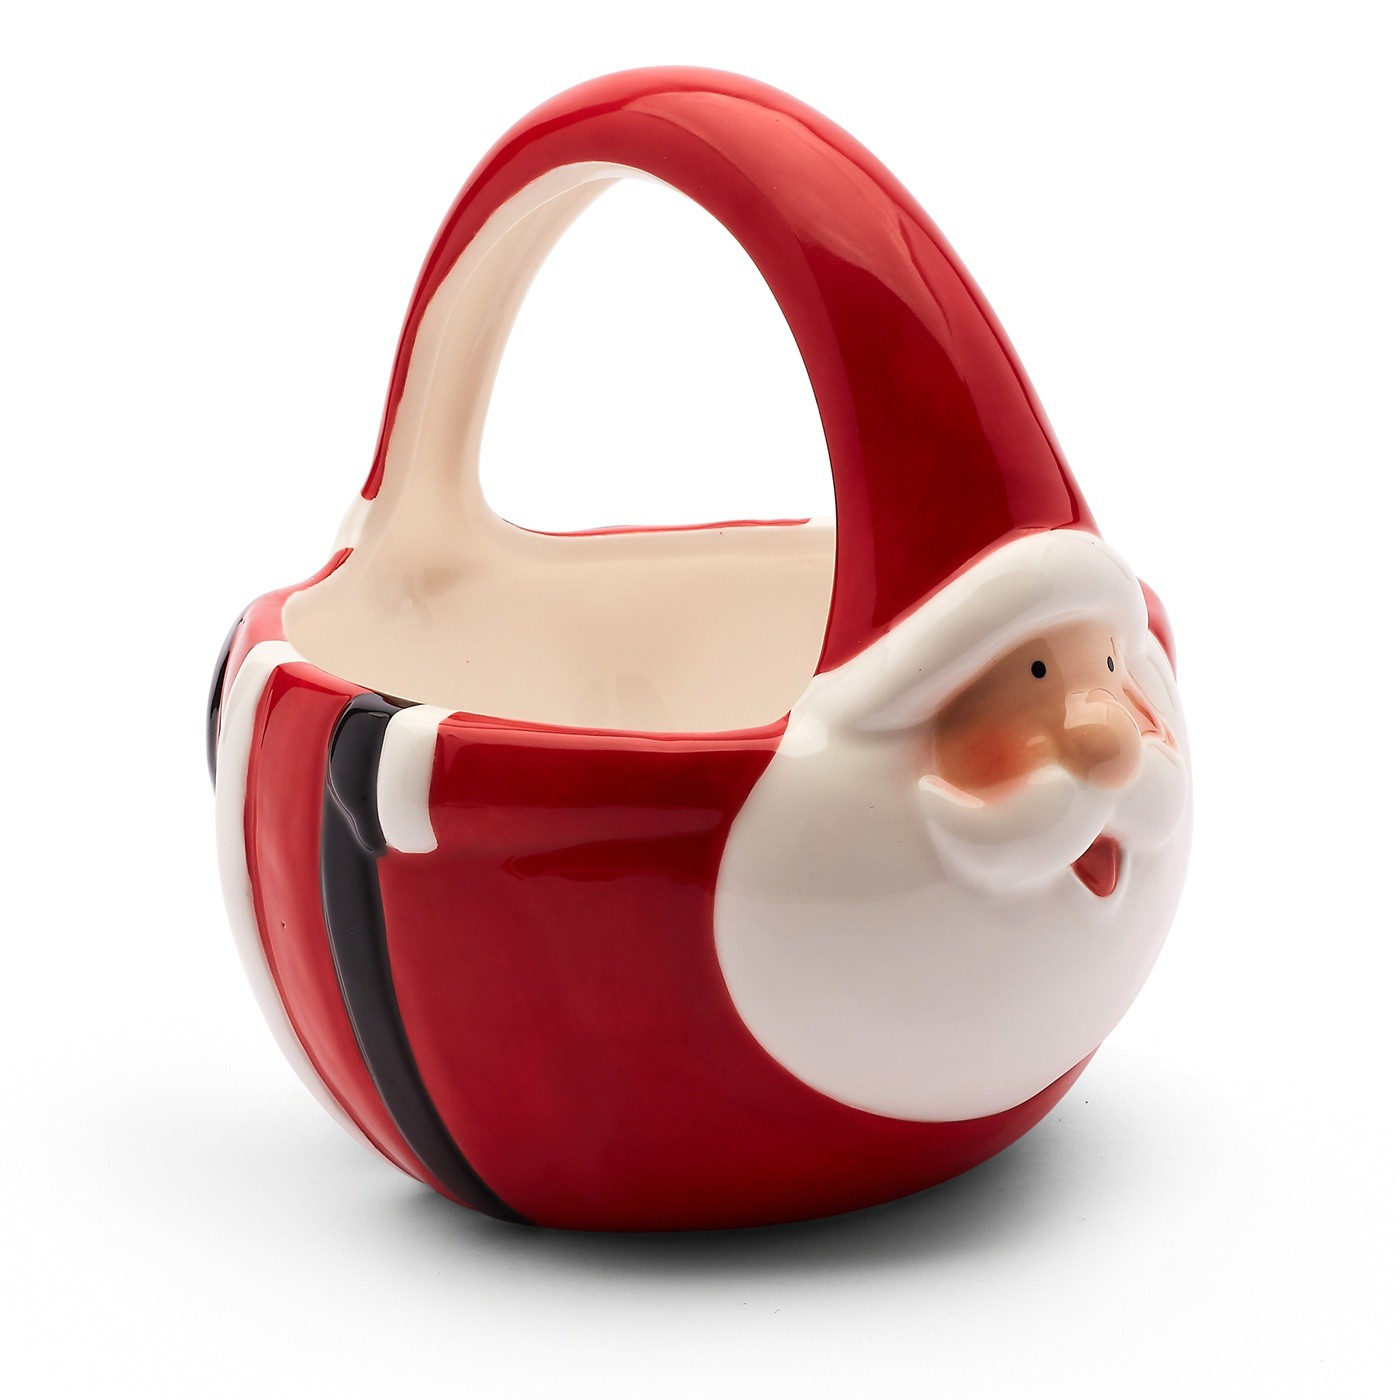 Dekorační keramický vánoční košík ve tvaru mikuláše 16,4 x 14 x 15,5 cm červená megamix.shop